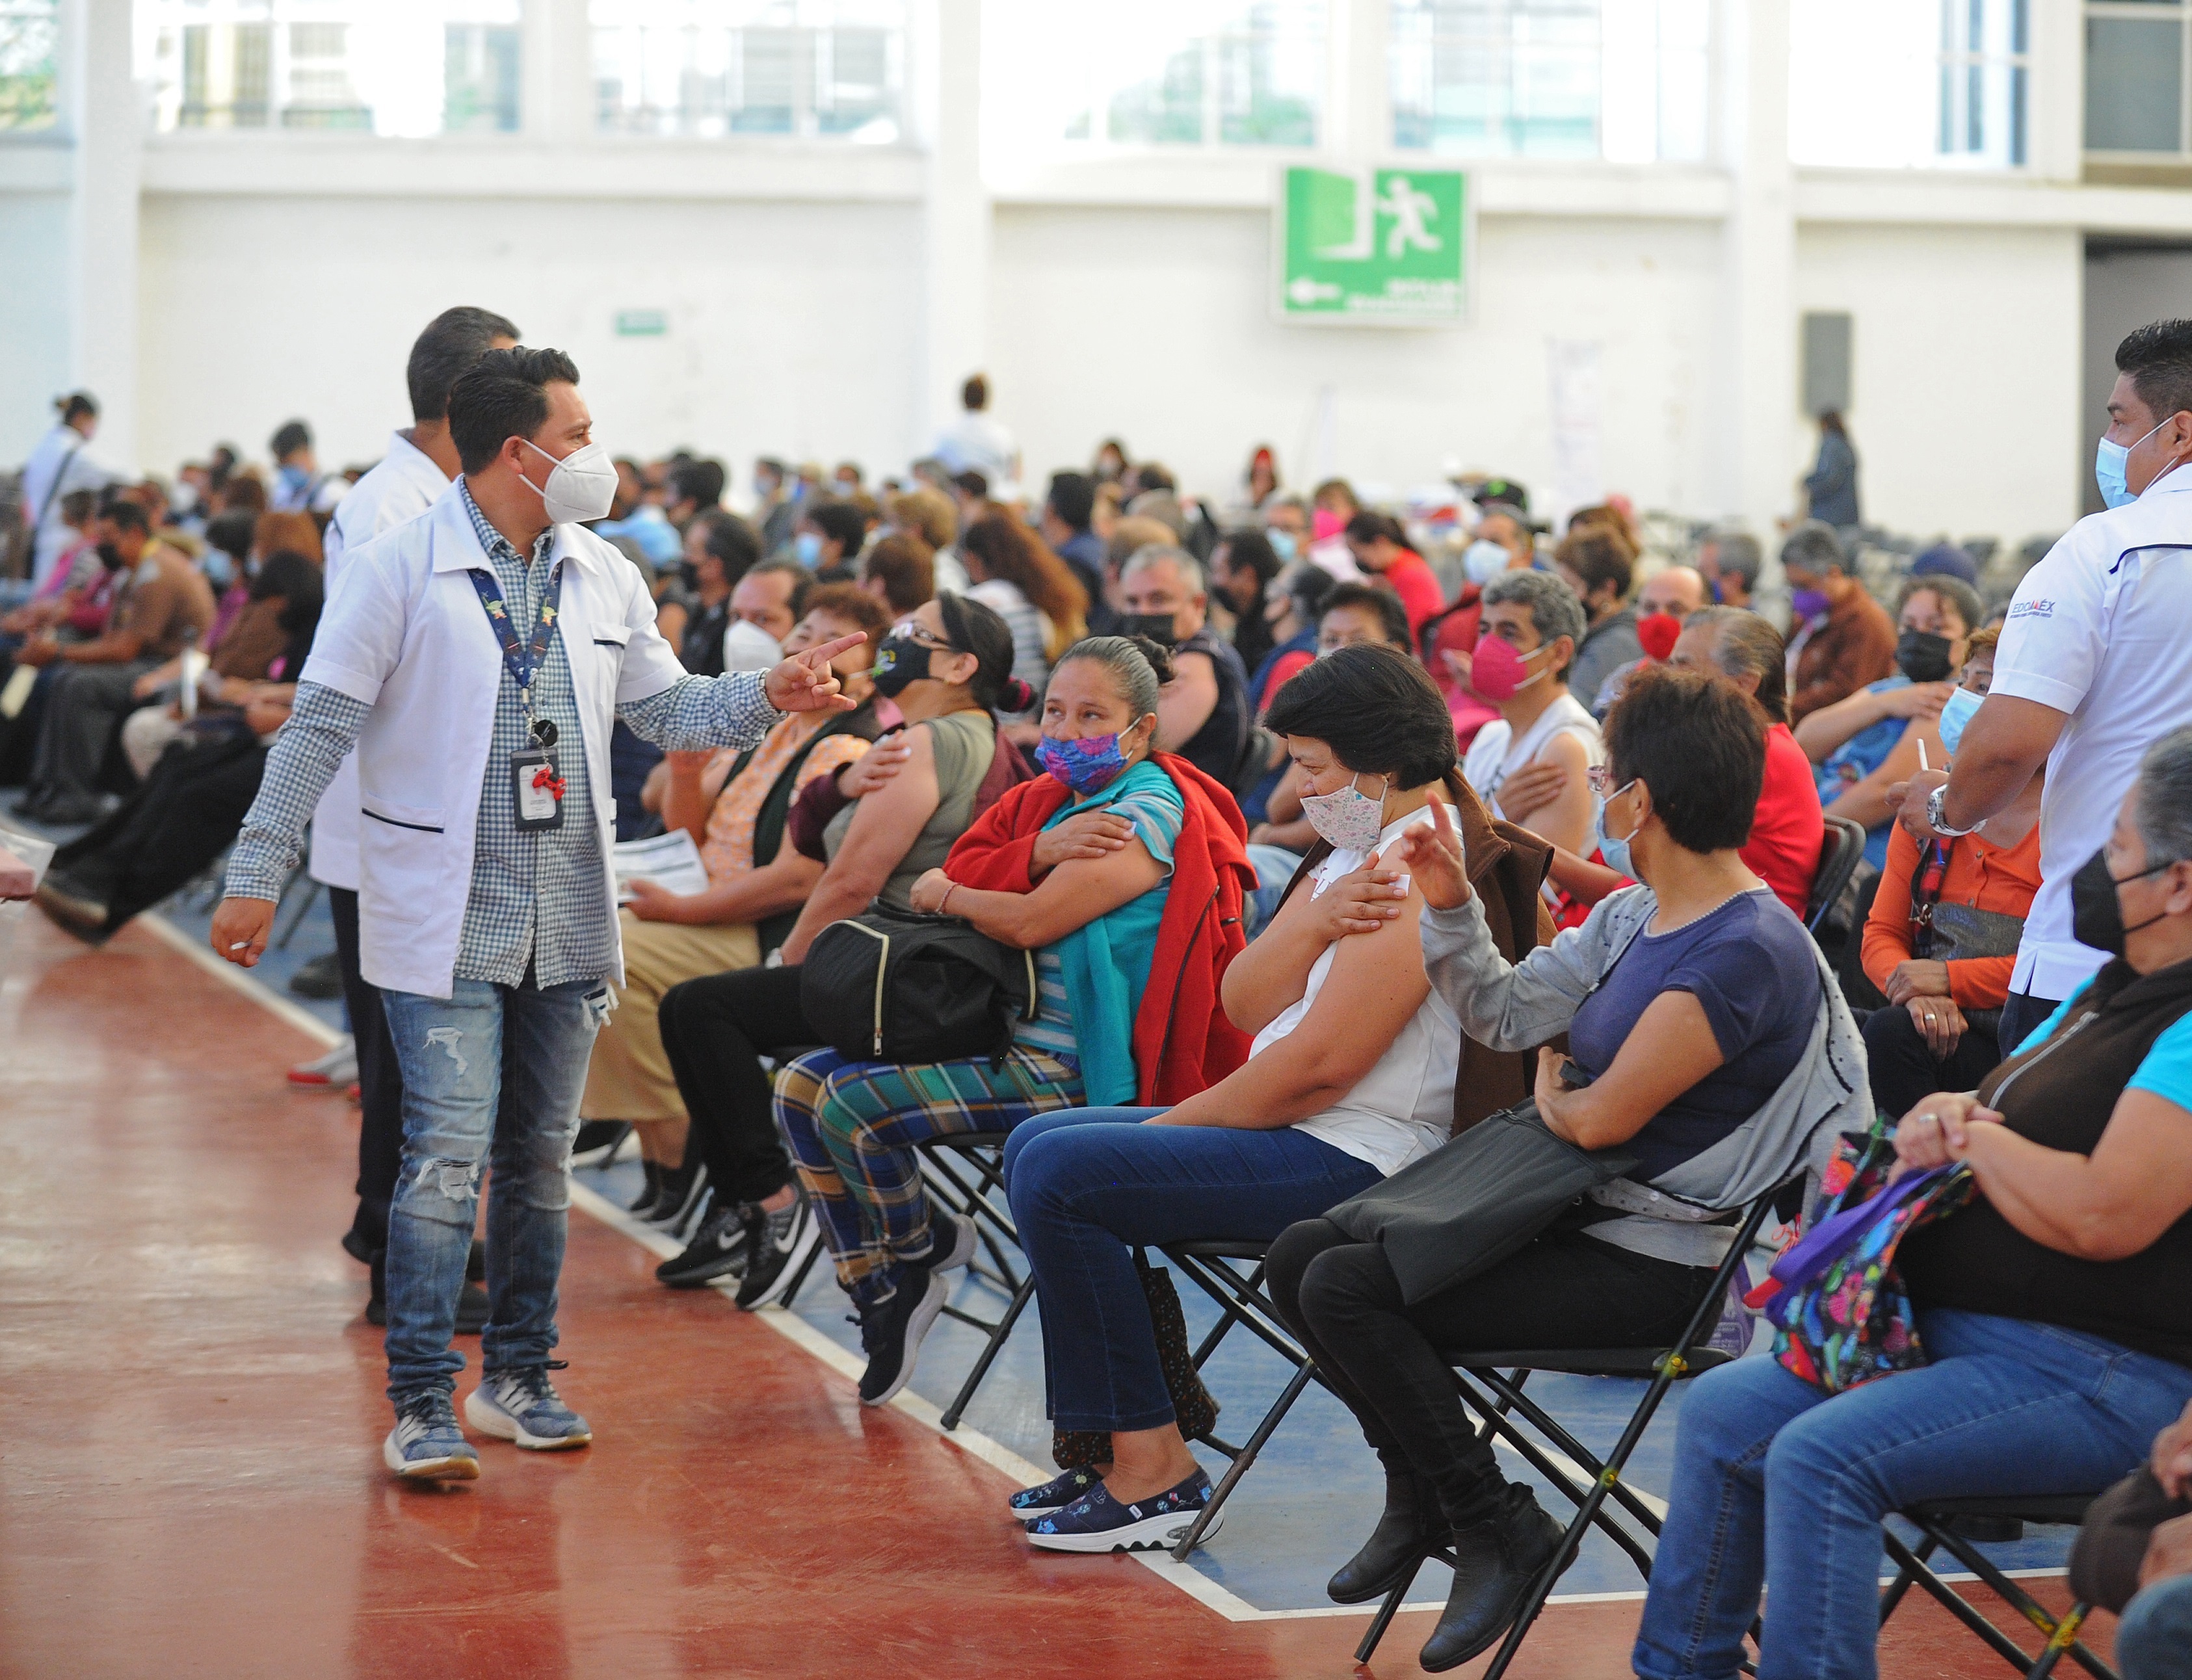 Durante el pasado se realizó en México un estudio que encontró que la prevalencia mensual de síntomas de ansiedad generalizada durante la pandemia por Covid-19 se mantuvo en niveles altos entre abril y agosto de 2020, con una prevalencia de entre 30.7 y 32.6%. Con la vacunación en avance, se espera una luz de alivio EFE/ Mario Guzmán
